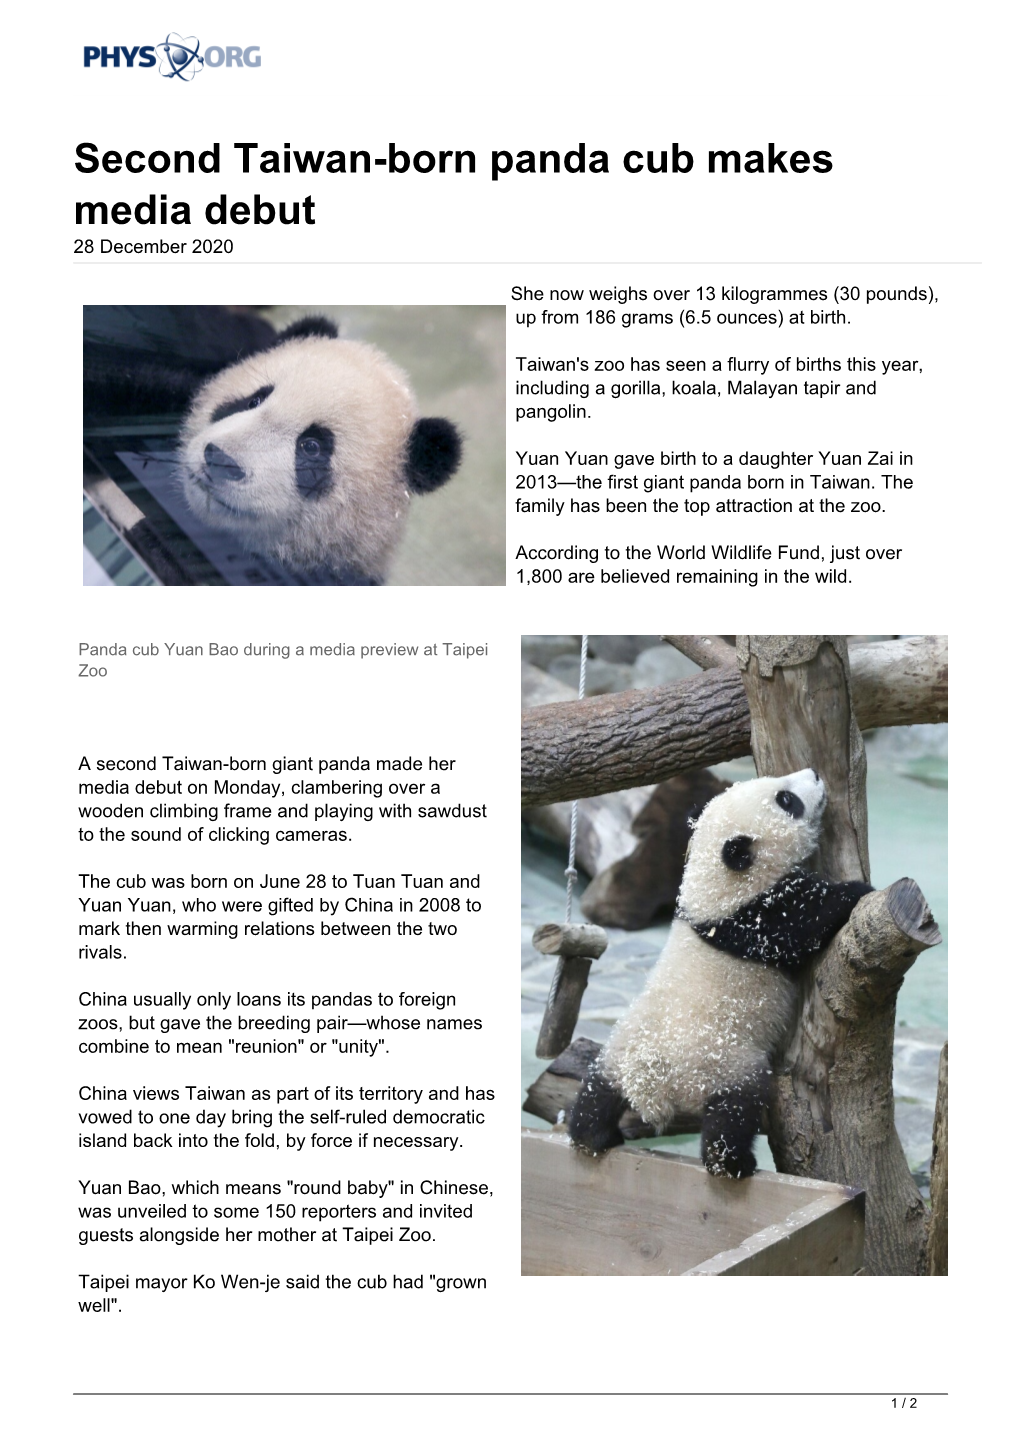 Second Taiwan-Born Panda Cub Makes Media Debut 28 December 2020